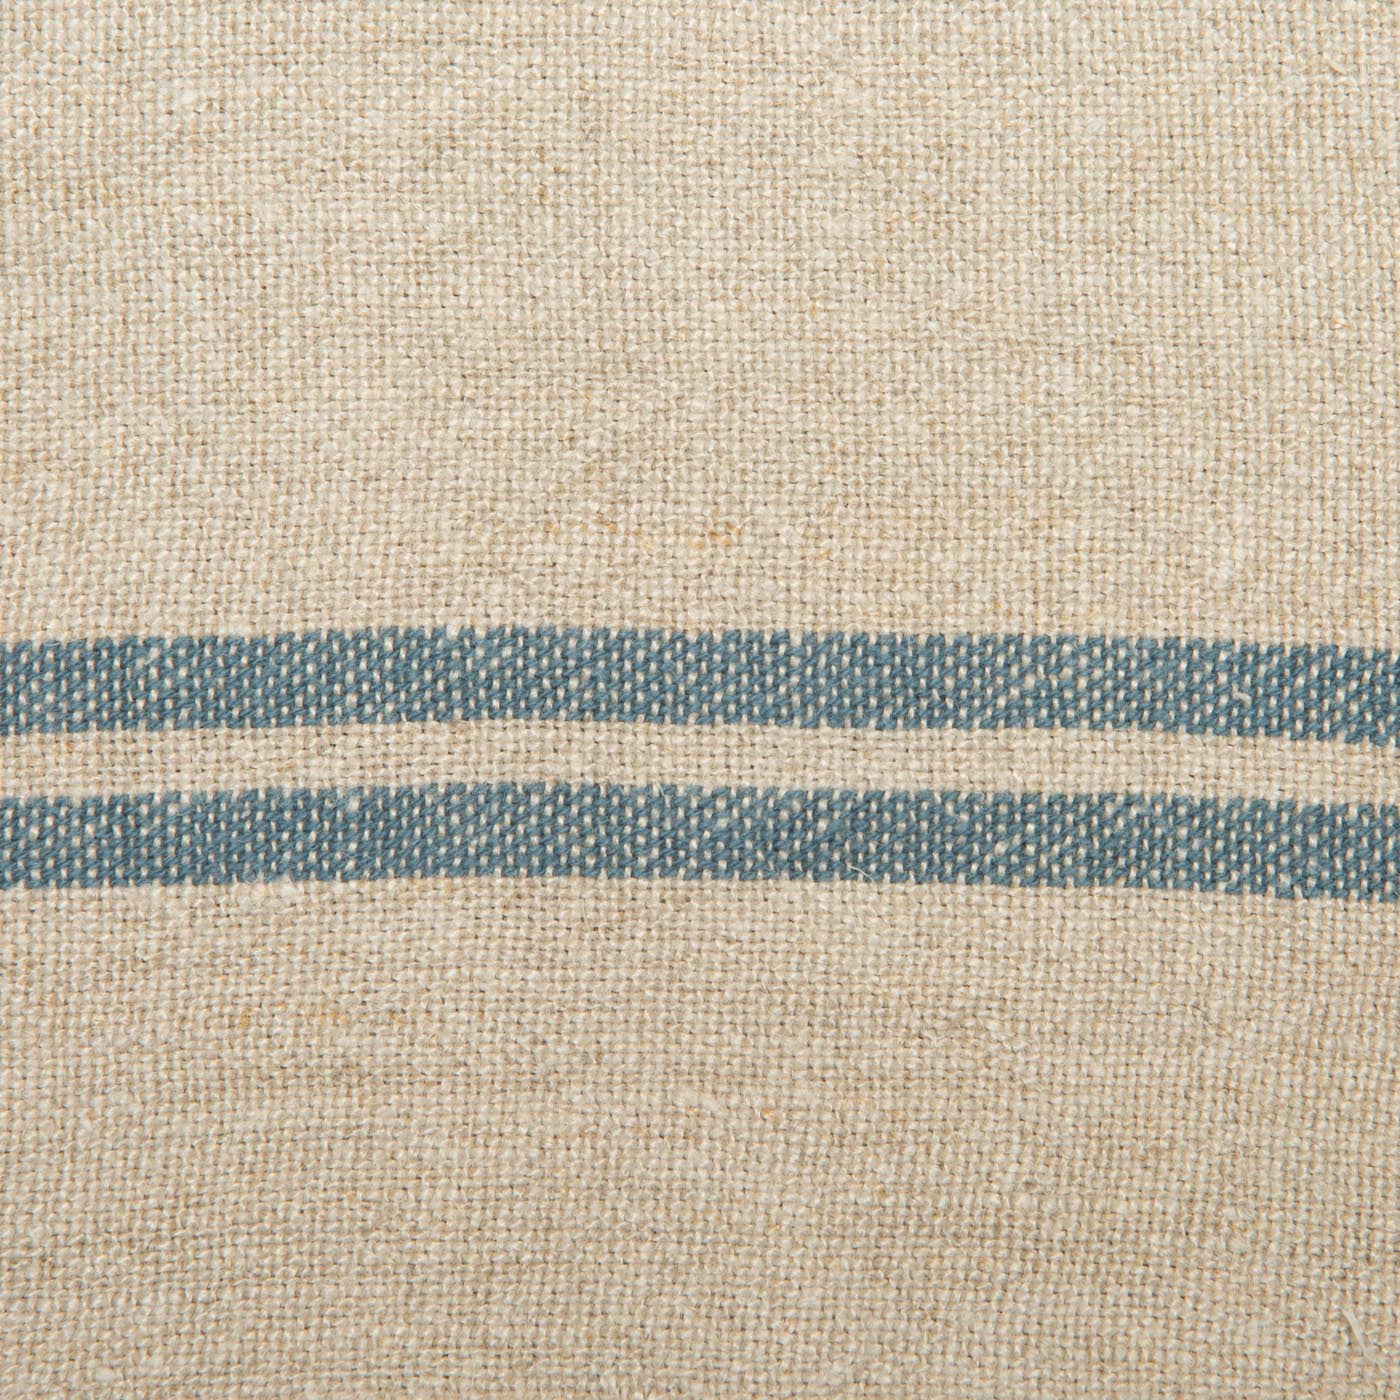 Vintage Linen Napkins Natural & Blue, Set of 4